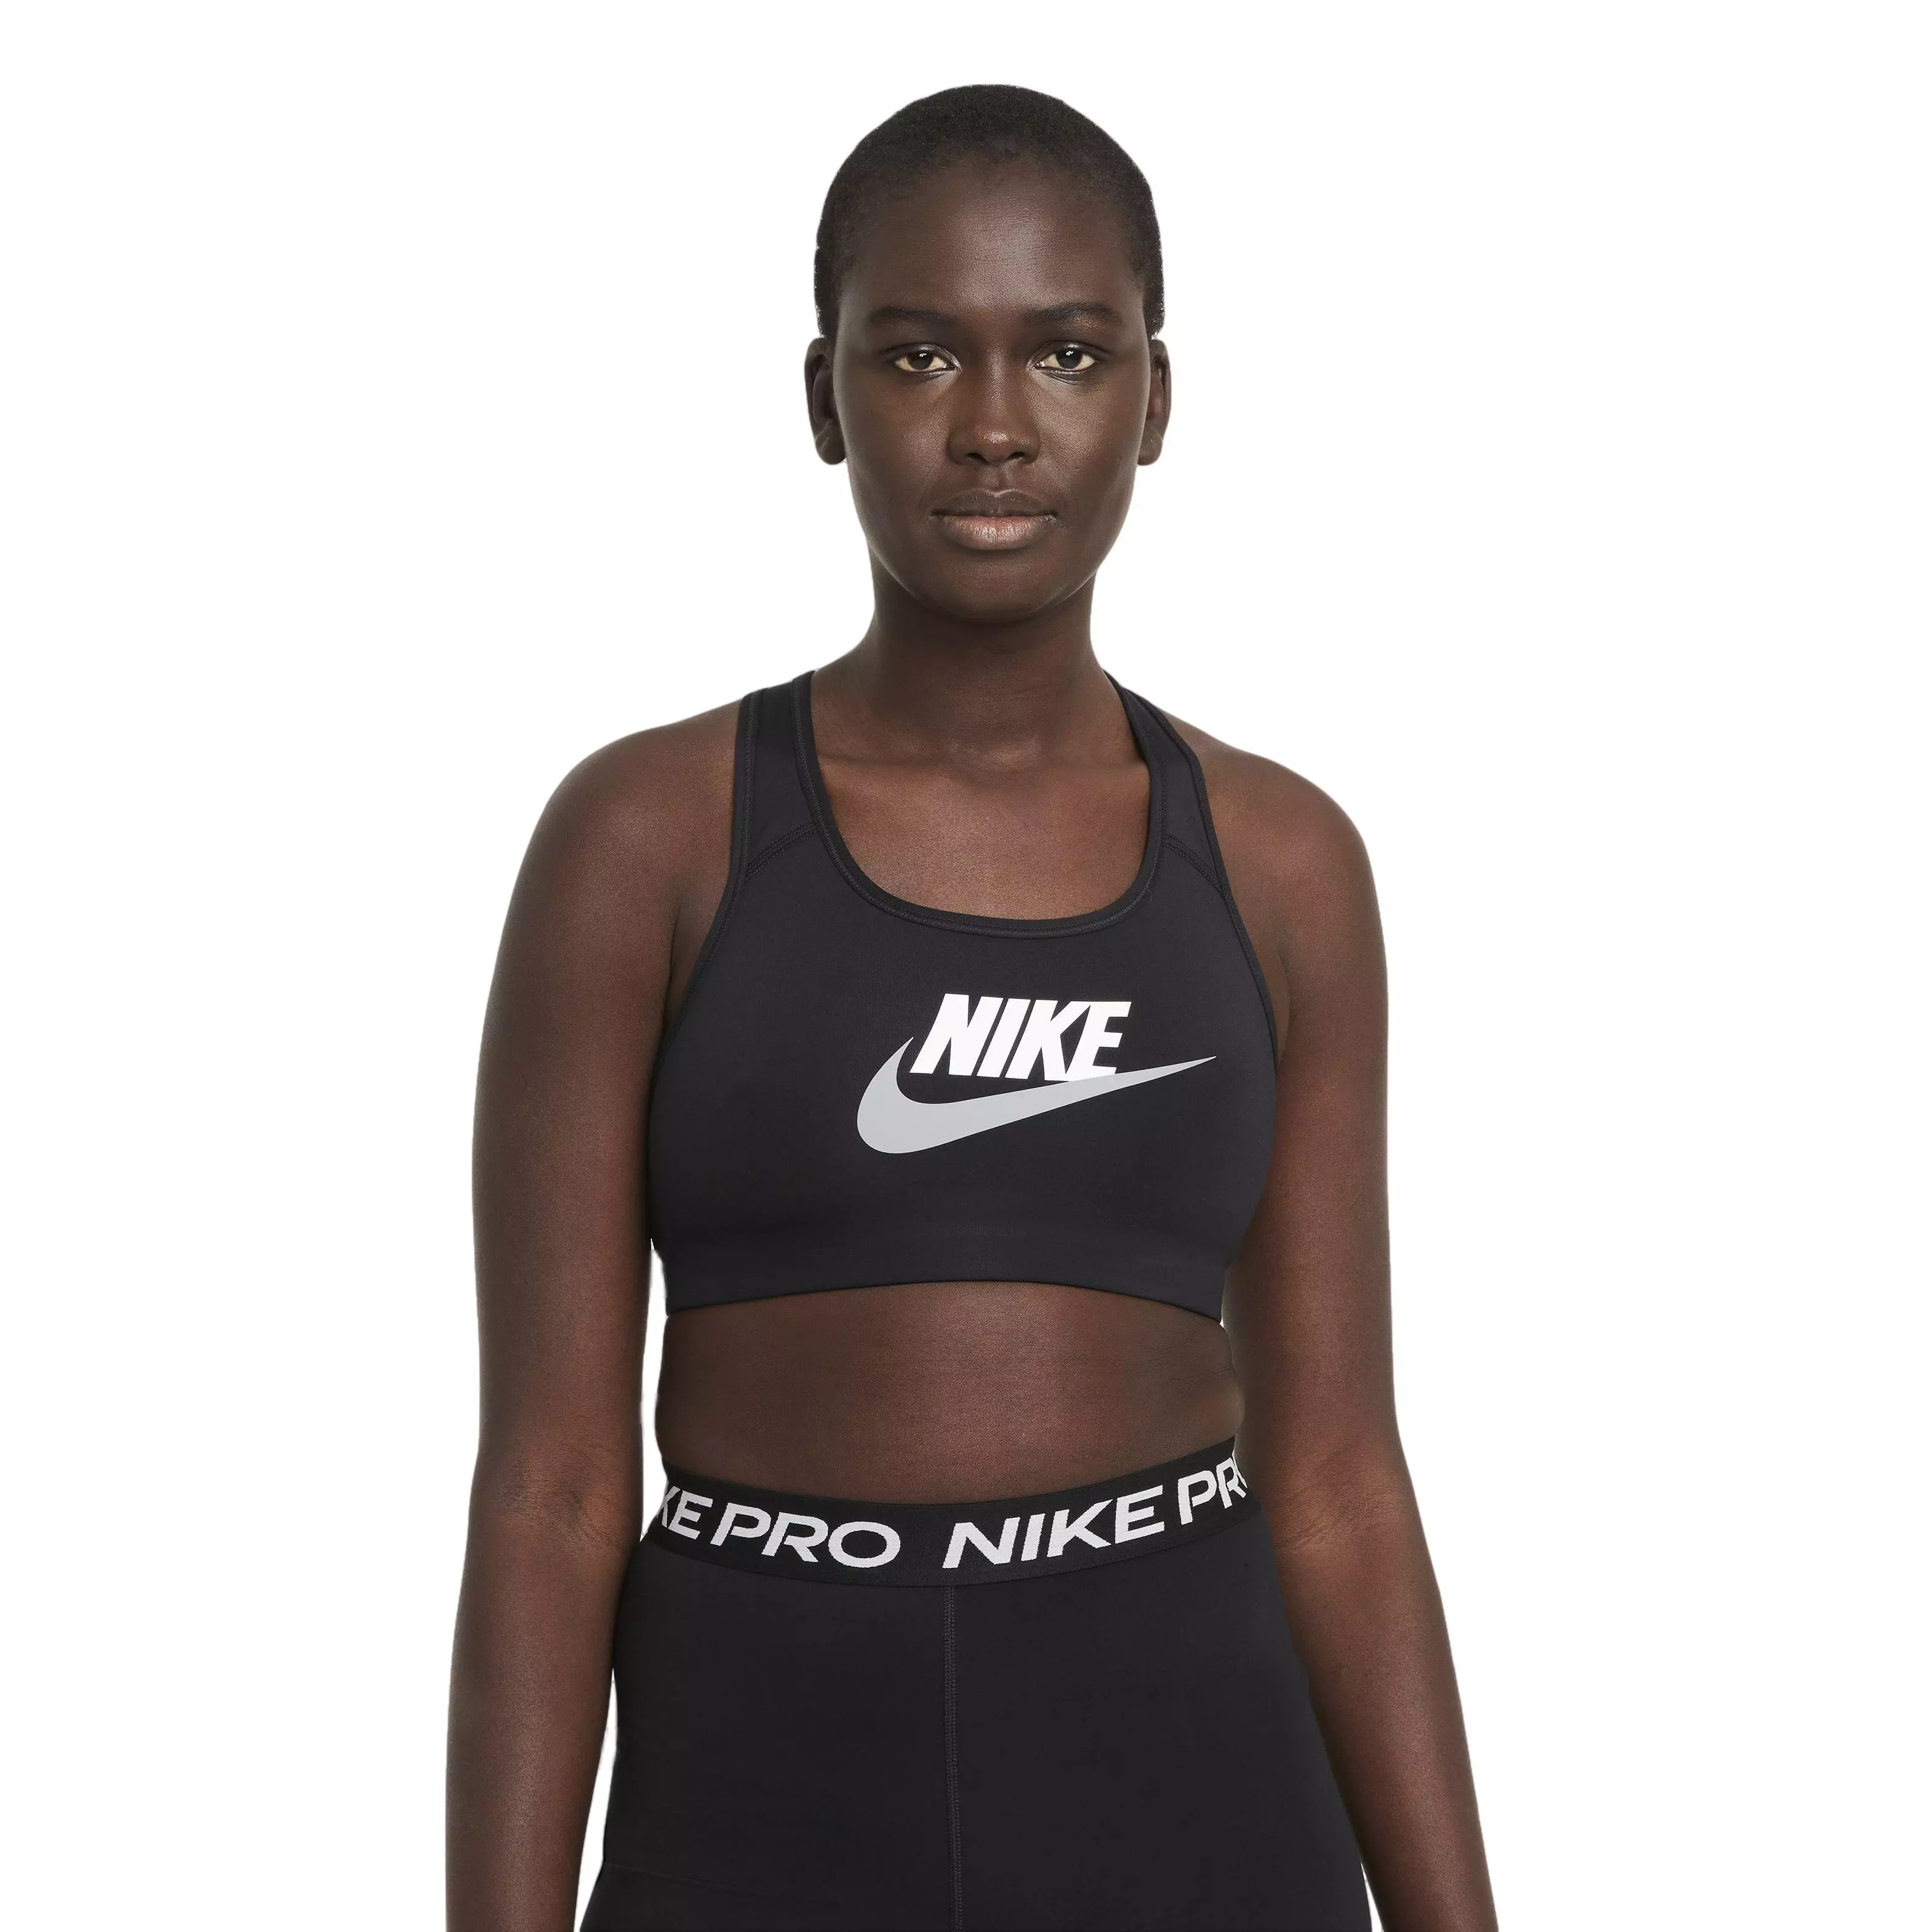 Nike Swoosh Medium Support